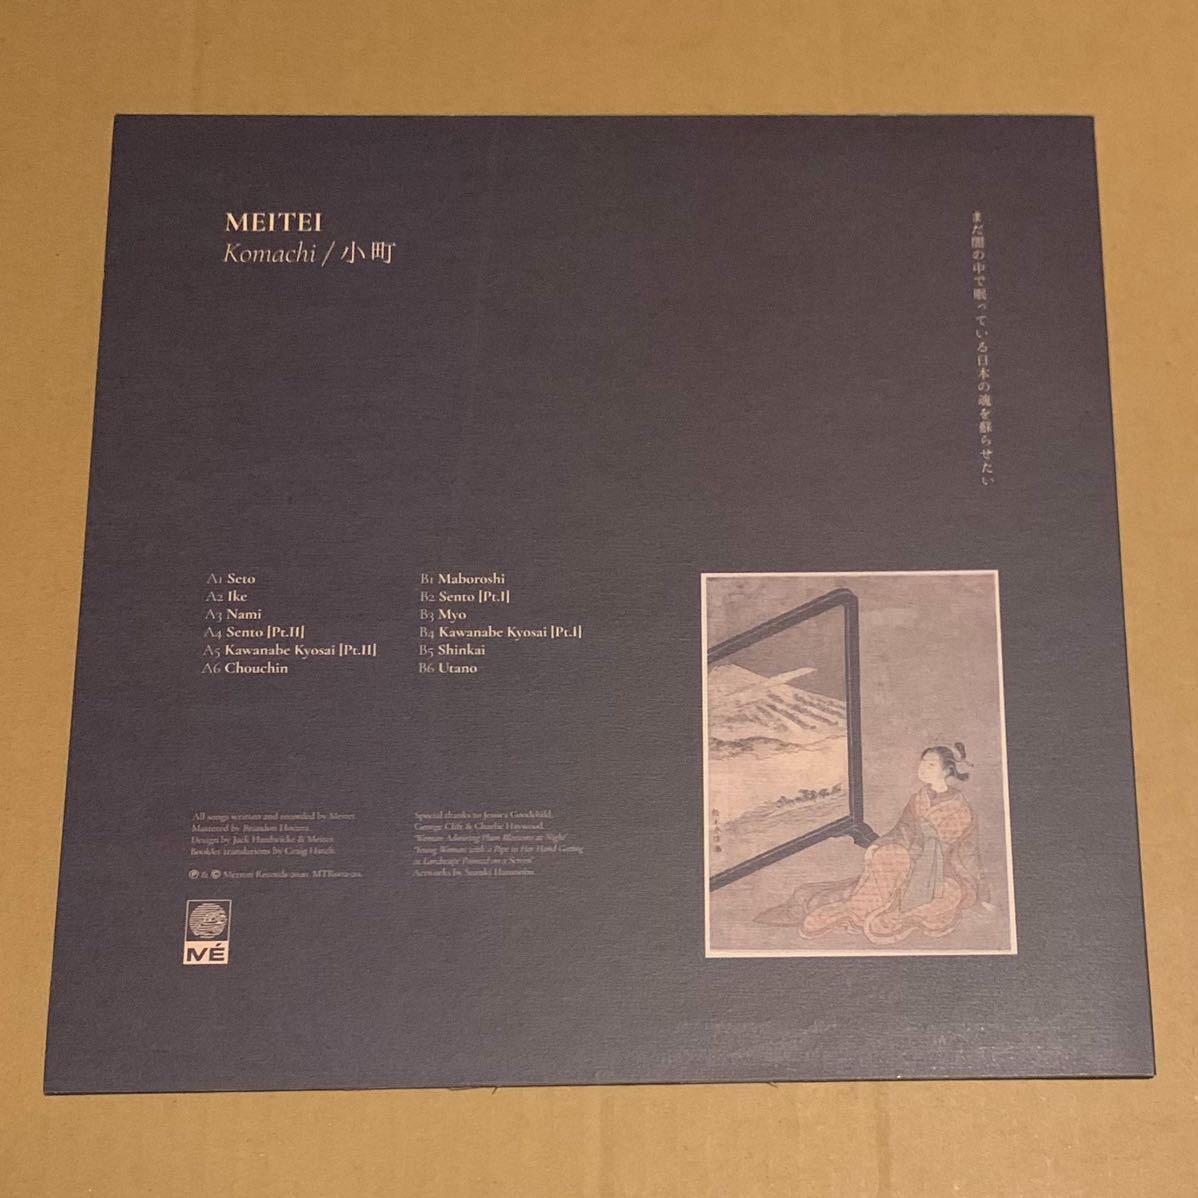 冥丁 Komachi 限定盤 小町 スペシャルエディション LP Mtron Records Meitei 和物 日本画 Electronic Experimental Ambient Abstractの画像2